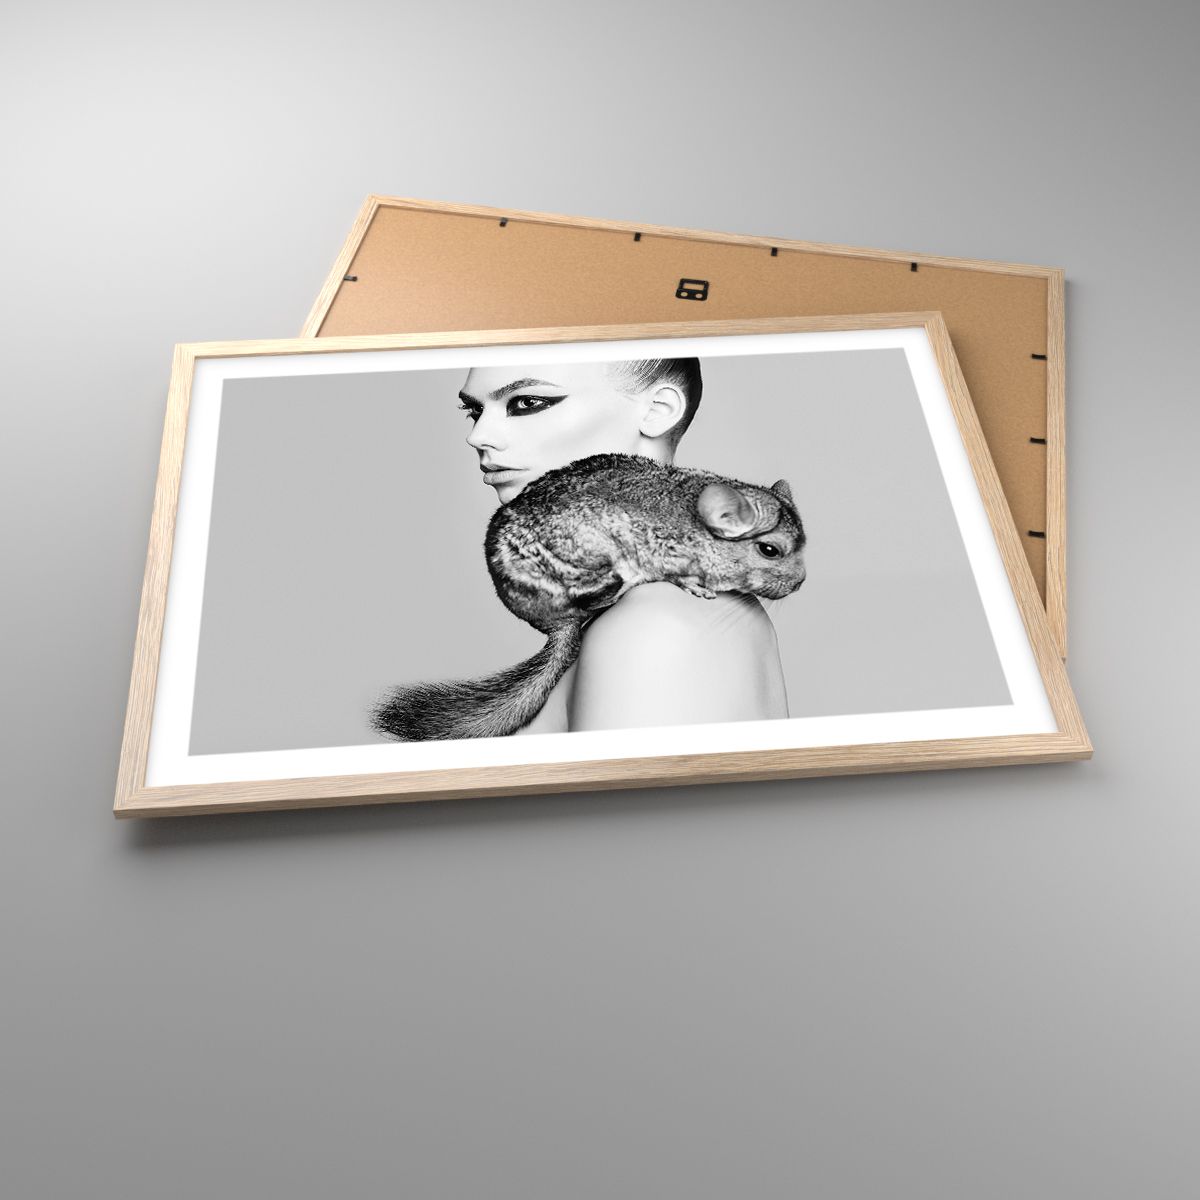 Plakat Kvinde, Plakat Kvinde med chinchilla, Plakat Model, Plakat Kunst, Plakat Sort og hvid